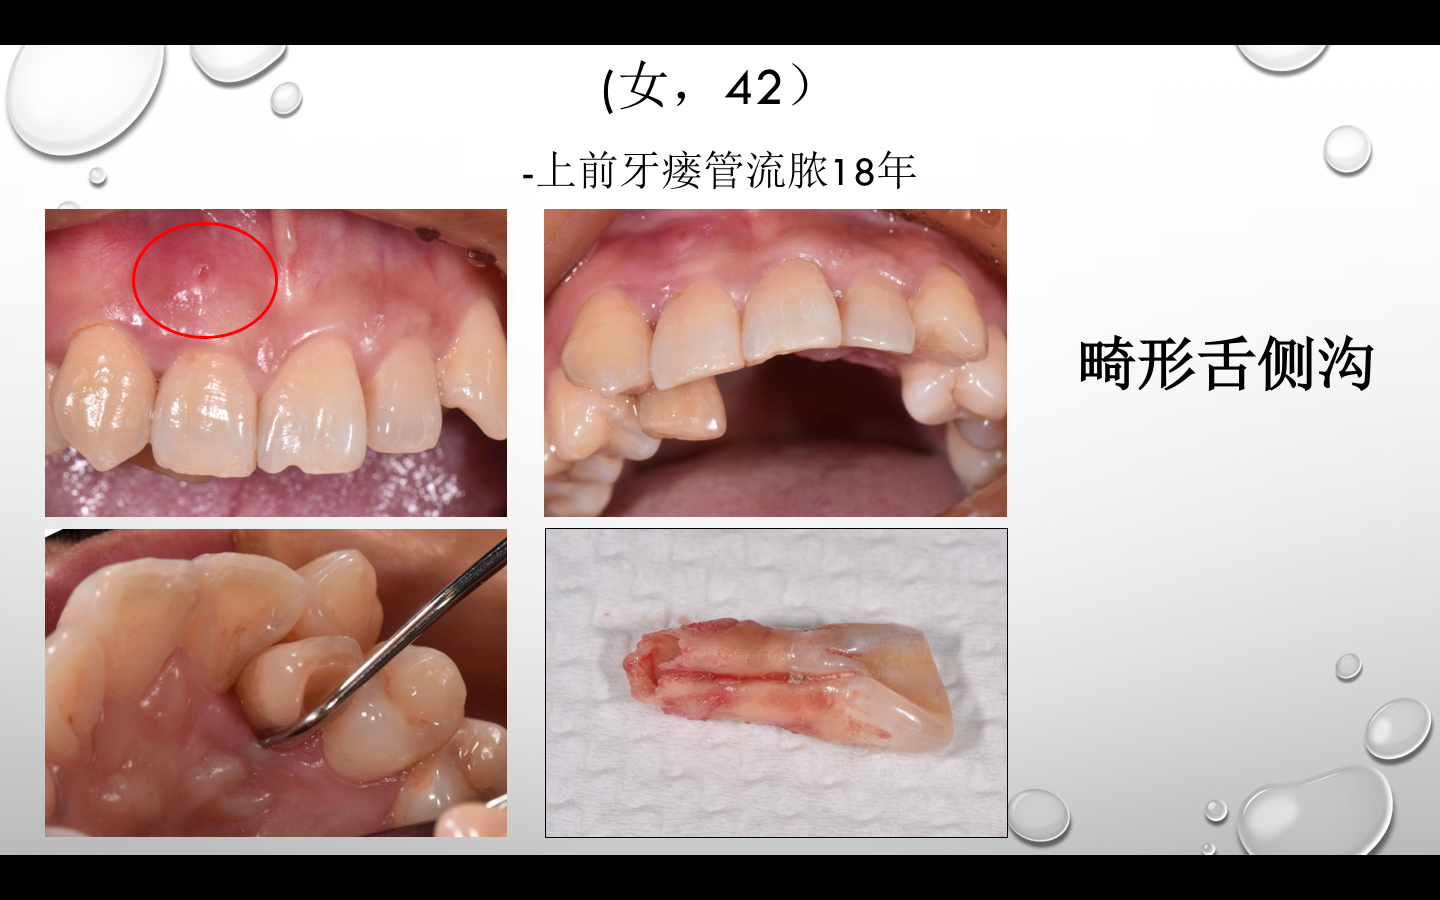 这是一个牙龈流脓18年的病例,病人没有当回事,结果最后只能拔牙了